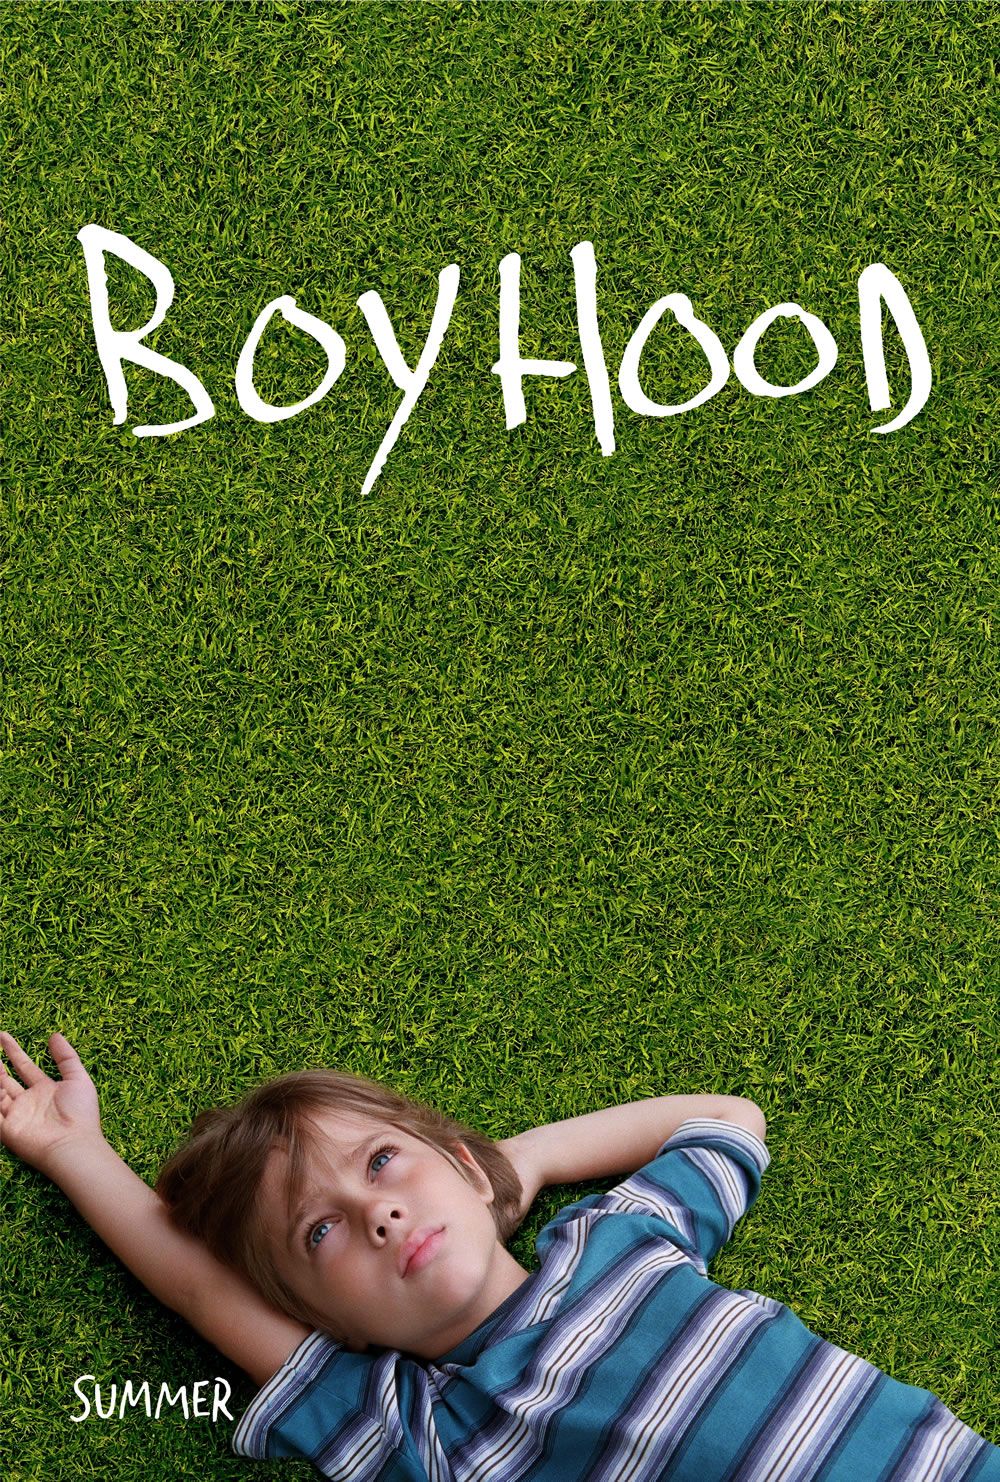 Image result for boyhood poster